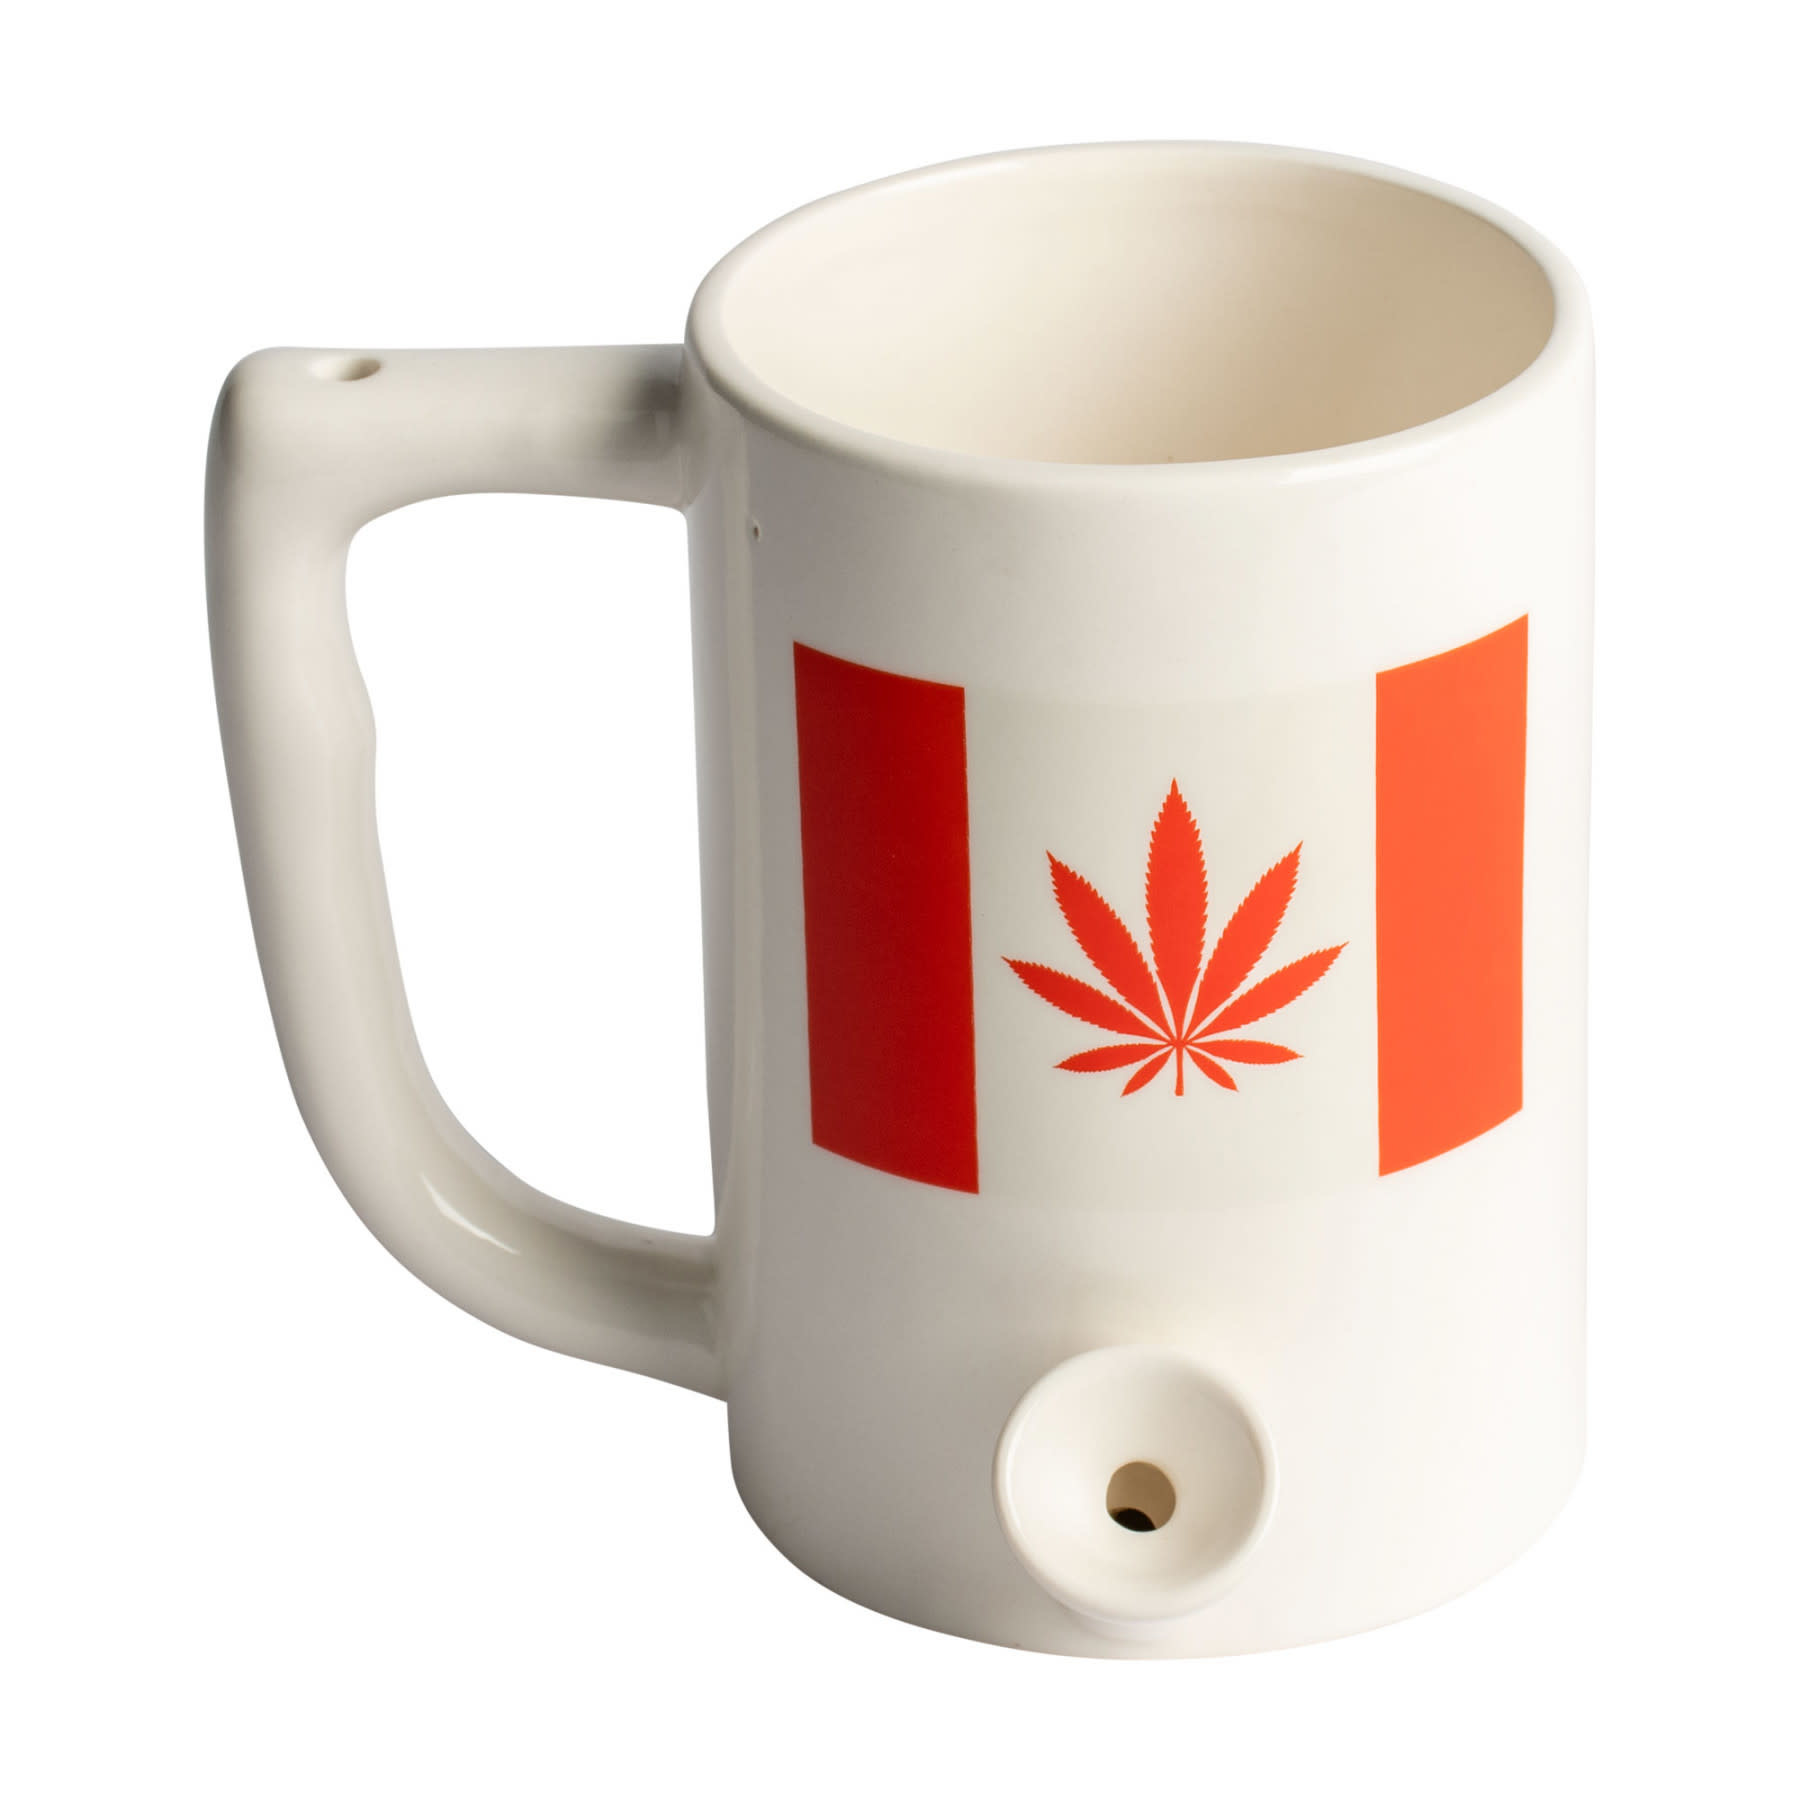 West Coast Gifts Ceramic Coffee Mug Pipe "Canada Leaf"